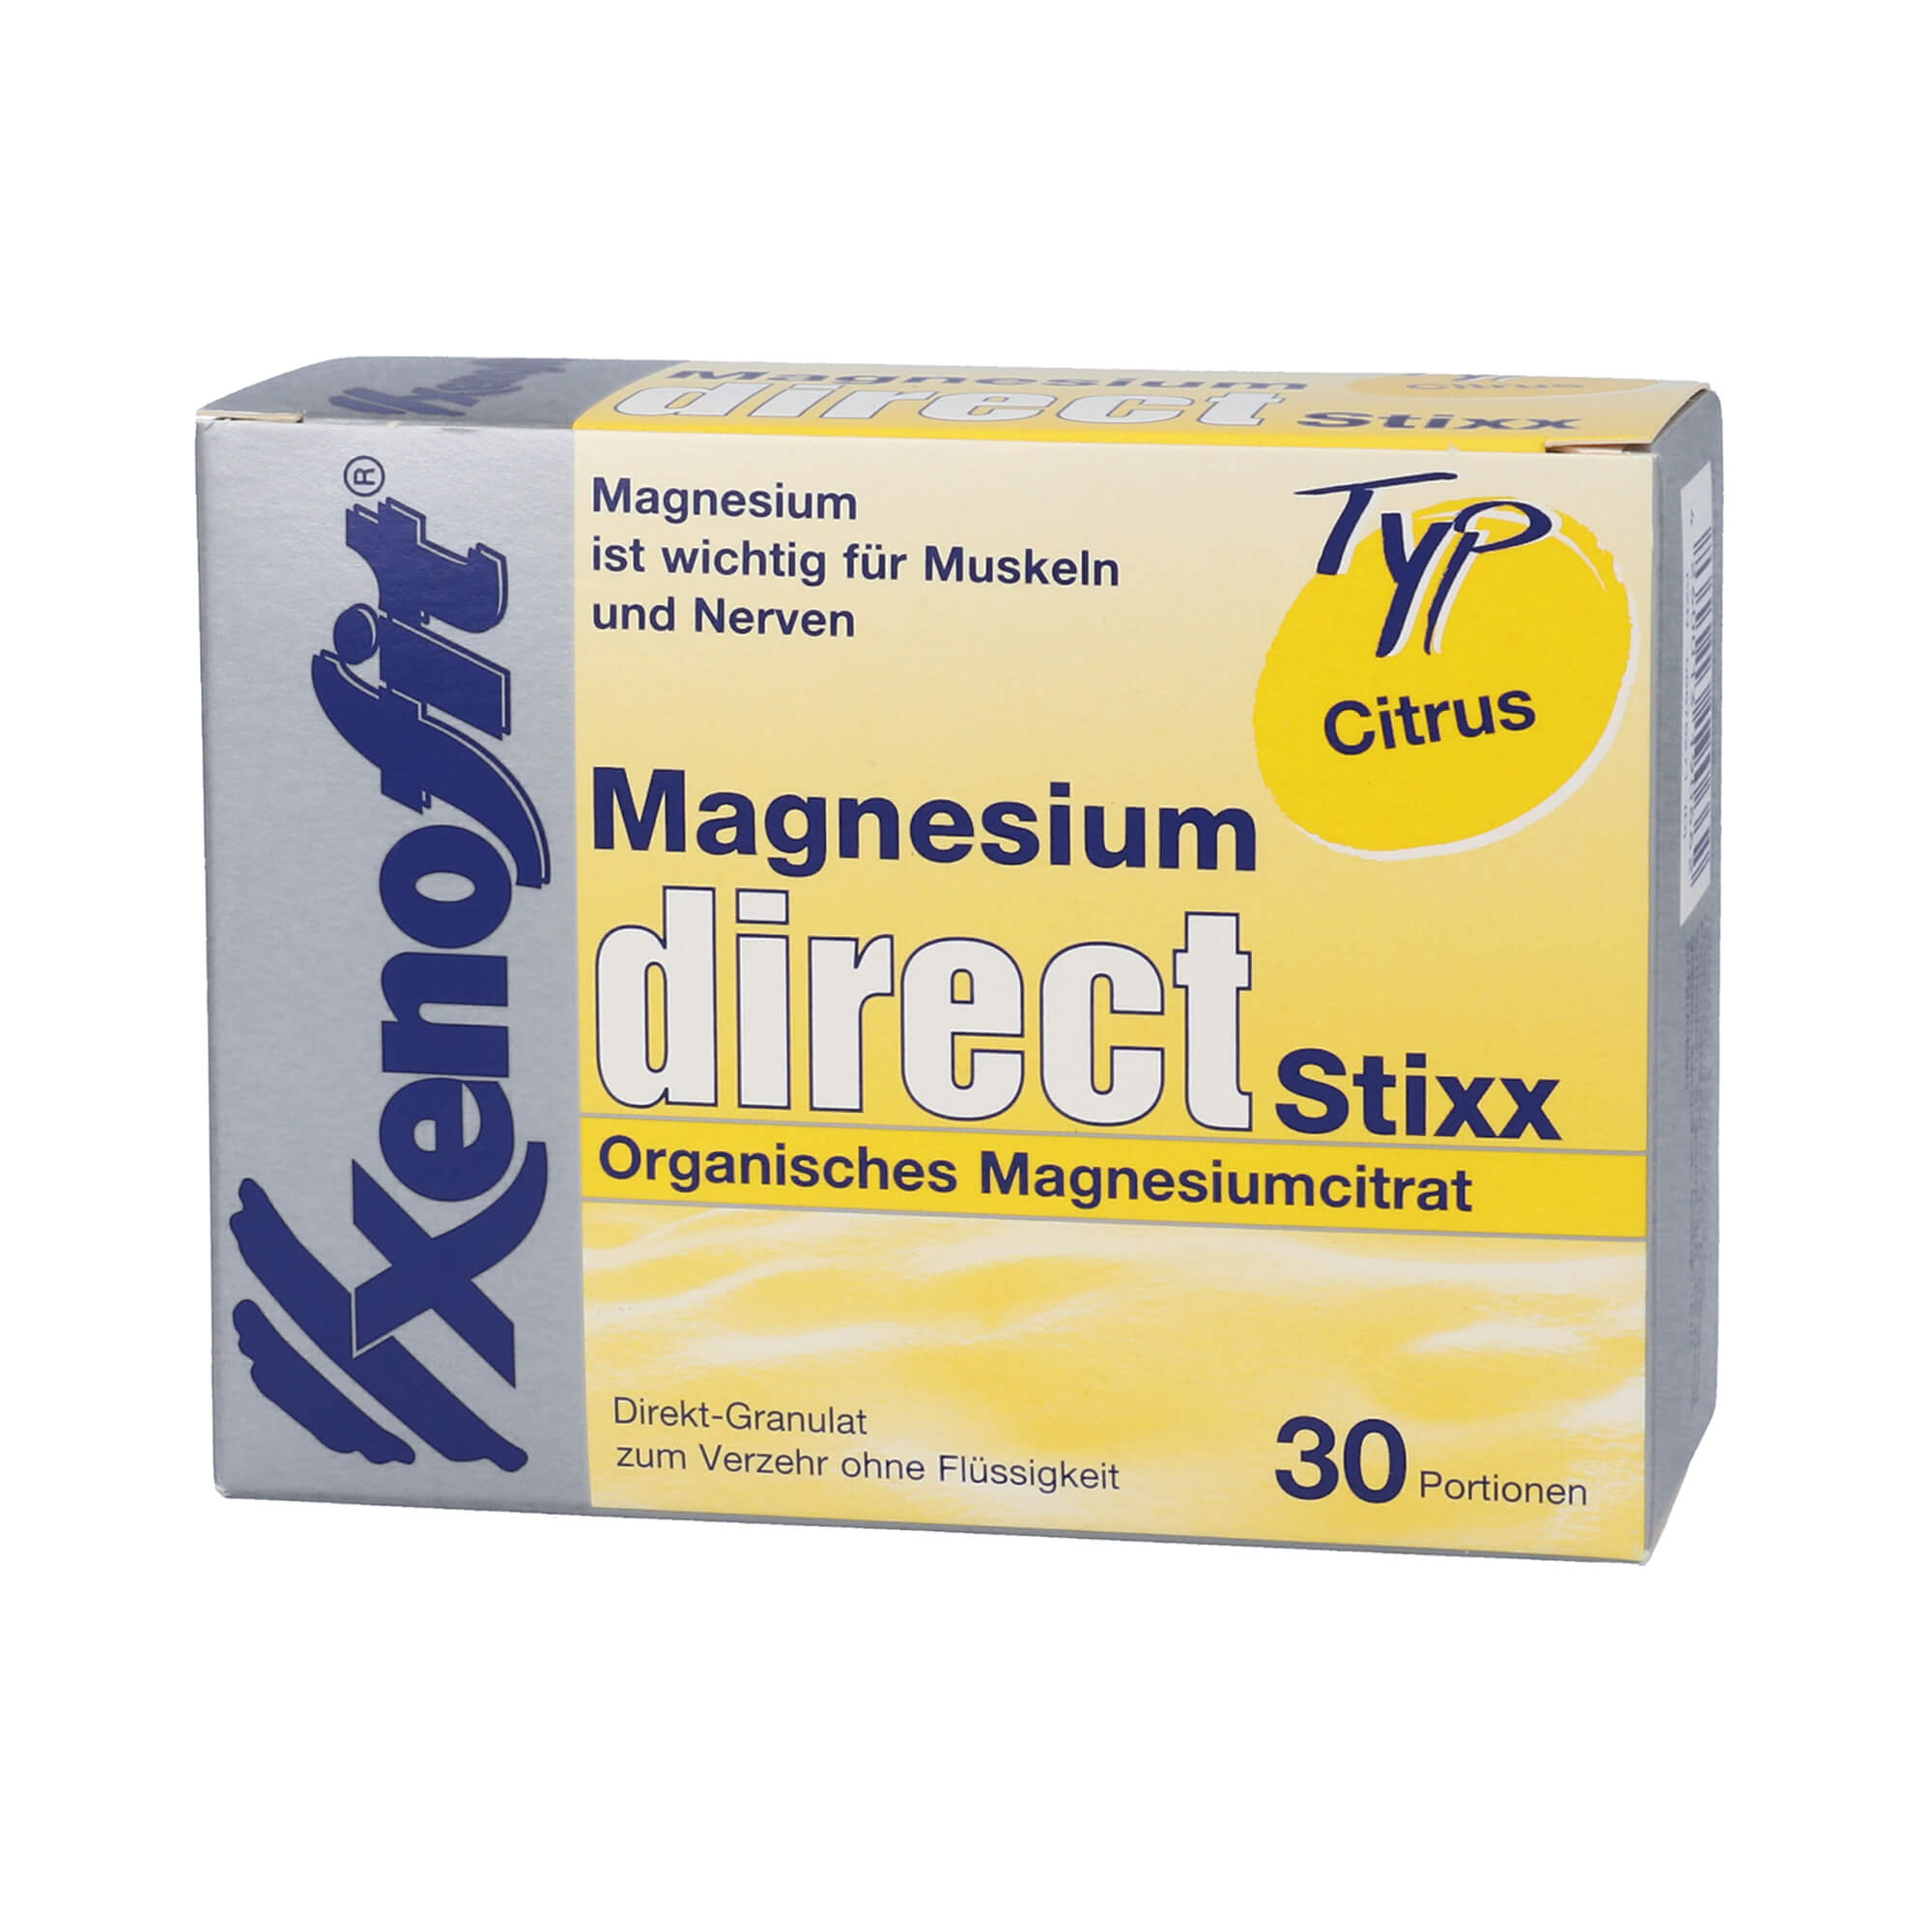 Direkt-Granulat zur schnellen Magnesium-Versorgung.